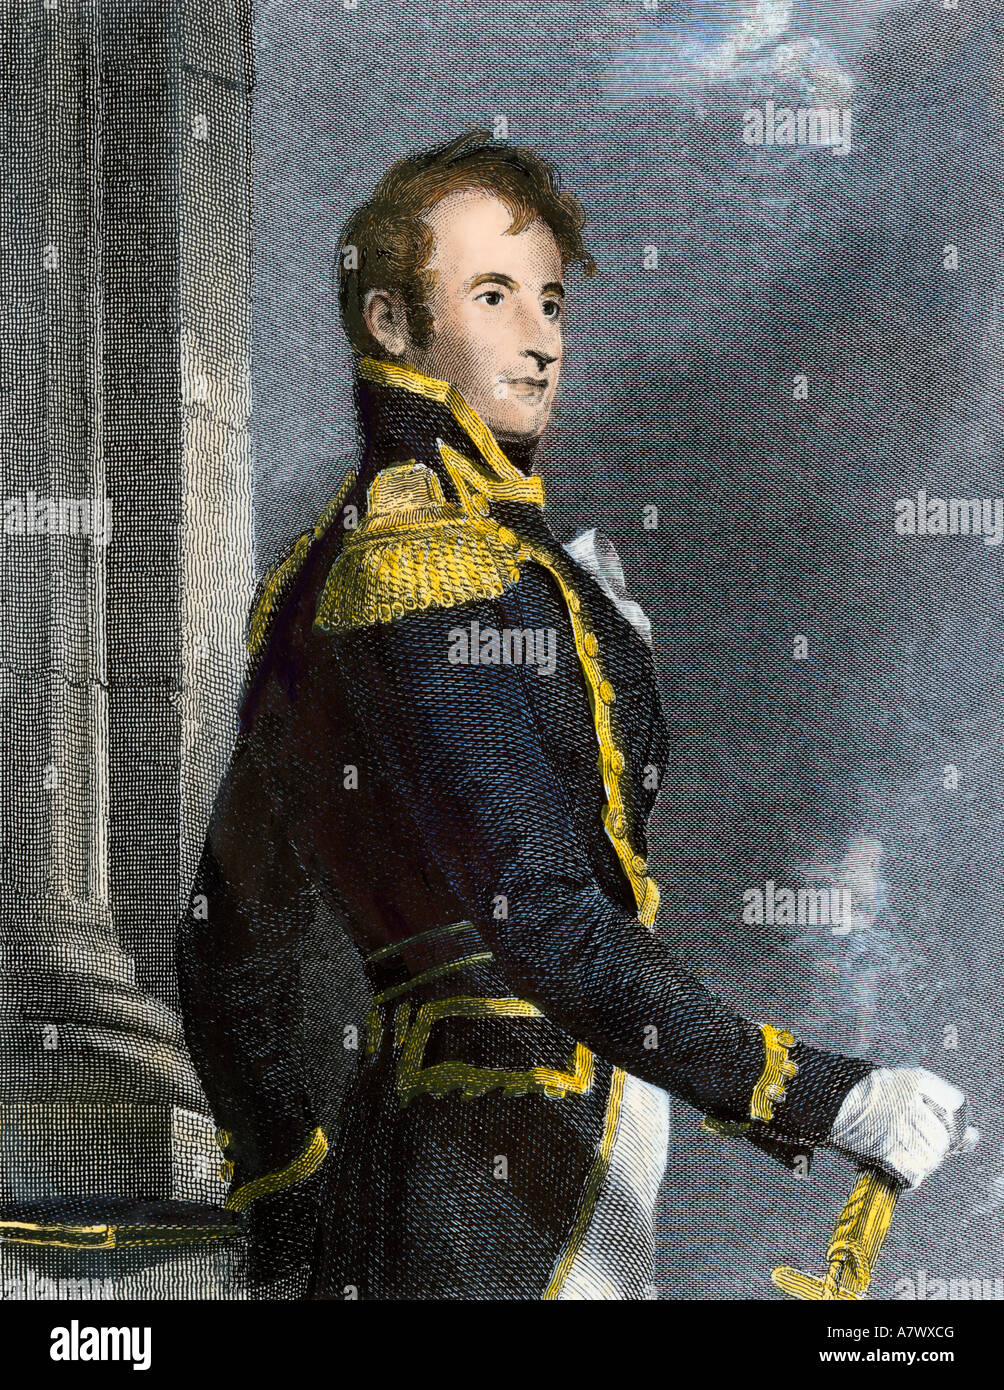 Comandante Naval estadounidense Stephen Decatur. Mano de color acero grabado Foto de stock